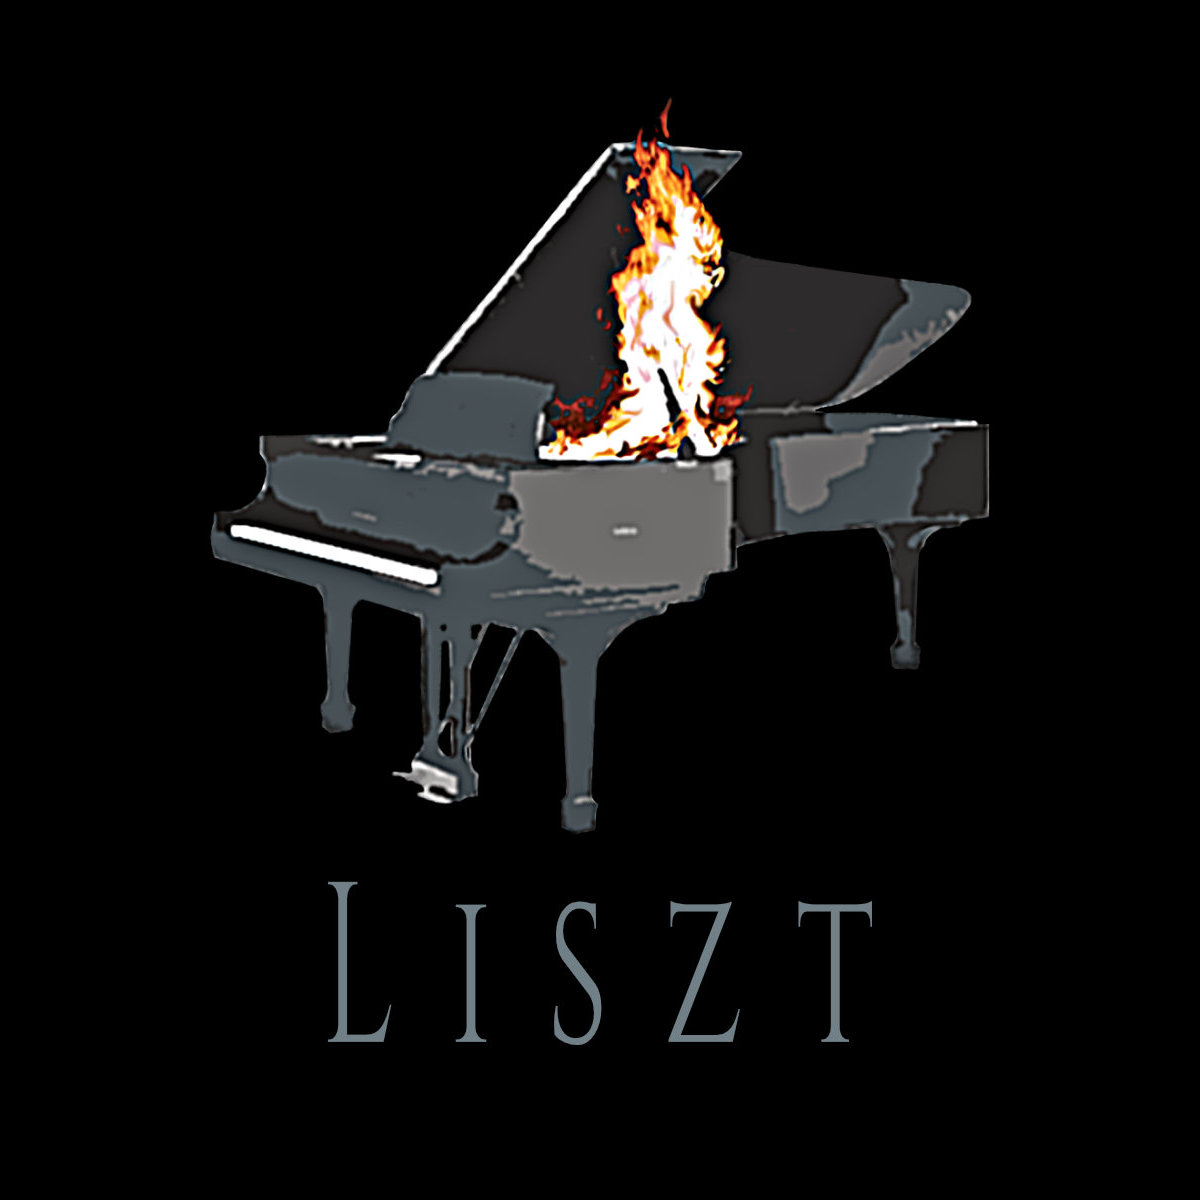 Liszt burning piano